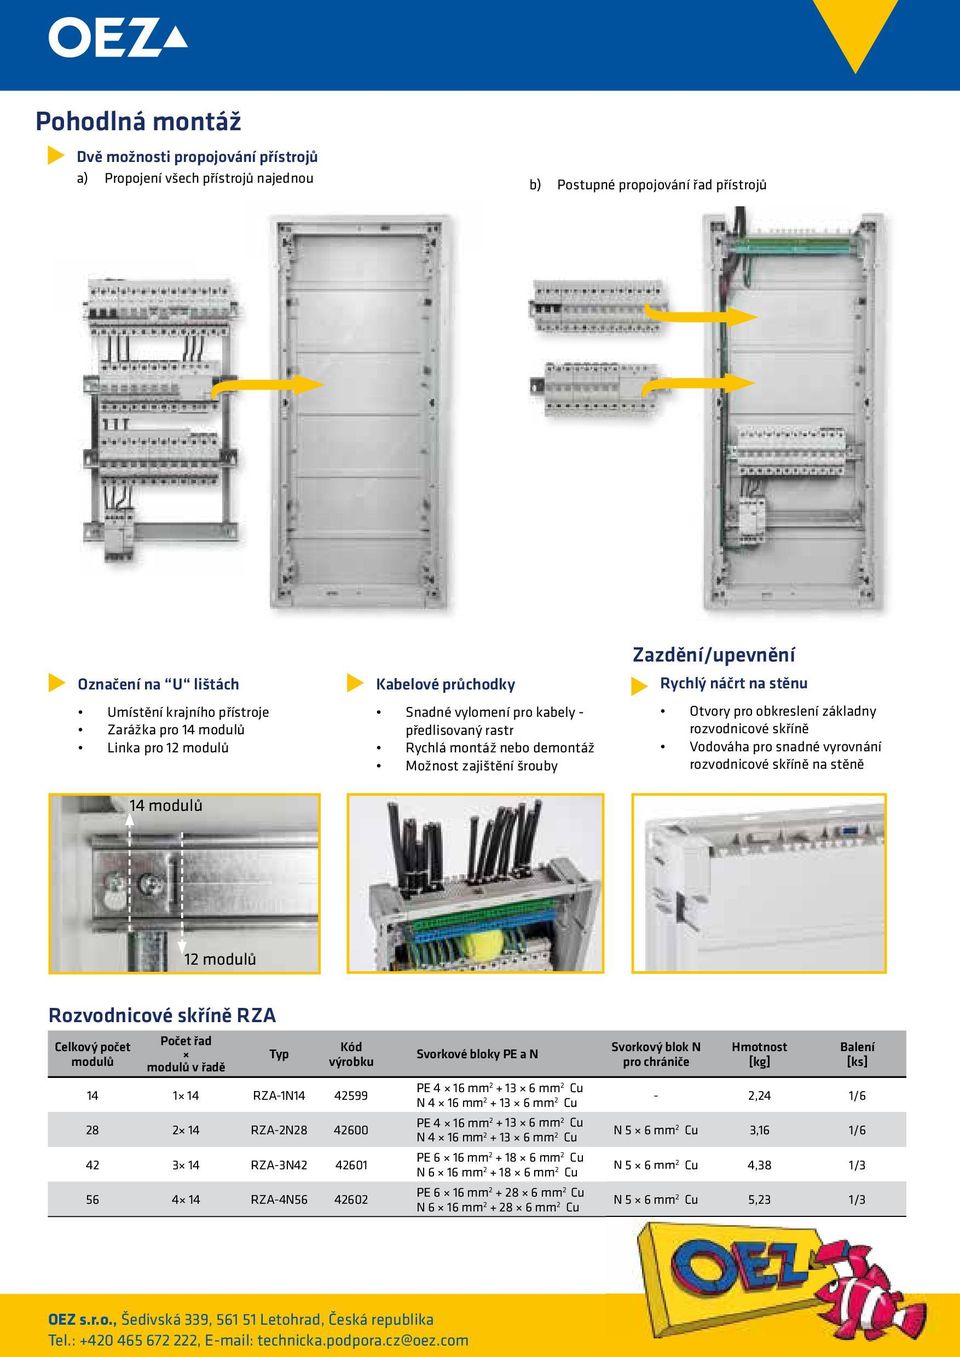 obkreslení základny rozvodnicové skříně Vodováha pro snadné vyrovnání rozvodnicové skříně na stěně 12 modulů Rozvodnicové skříně RZA Celkový počet modulů Počet řad modulů v řadě Typ Kód výrobku 14 1